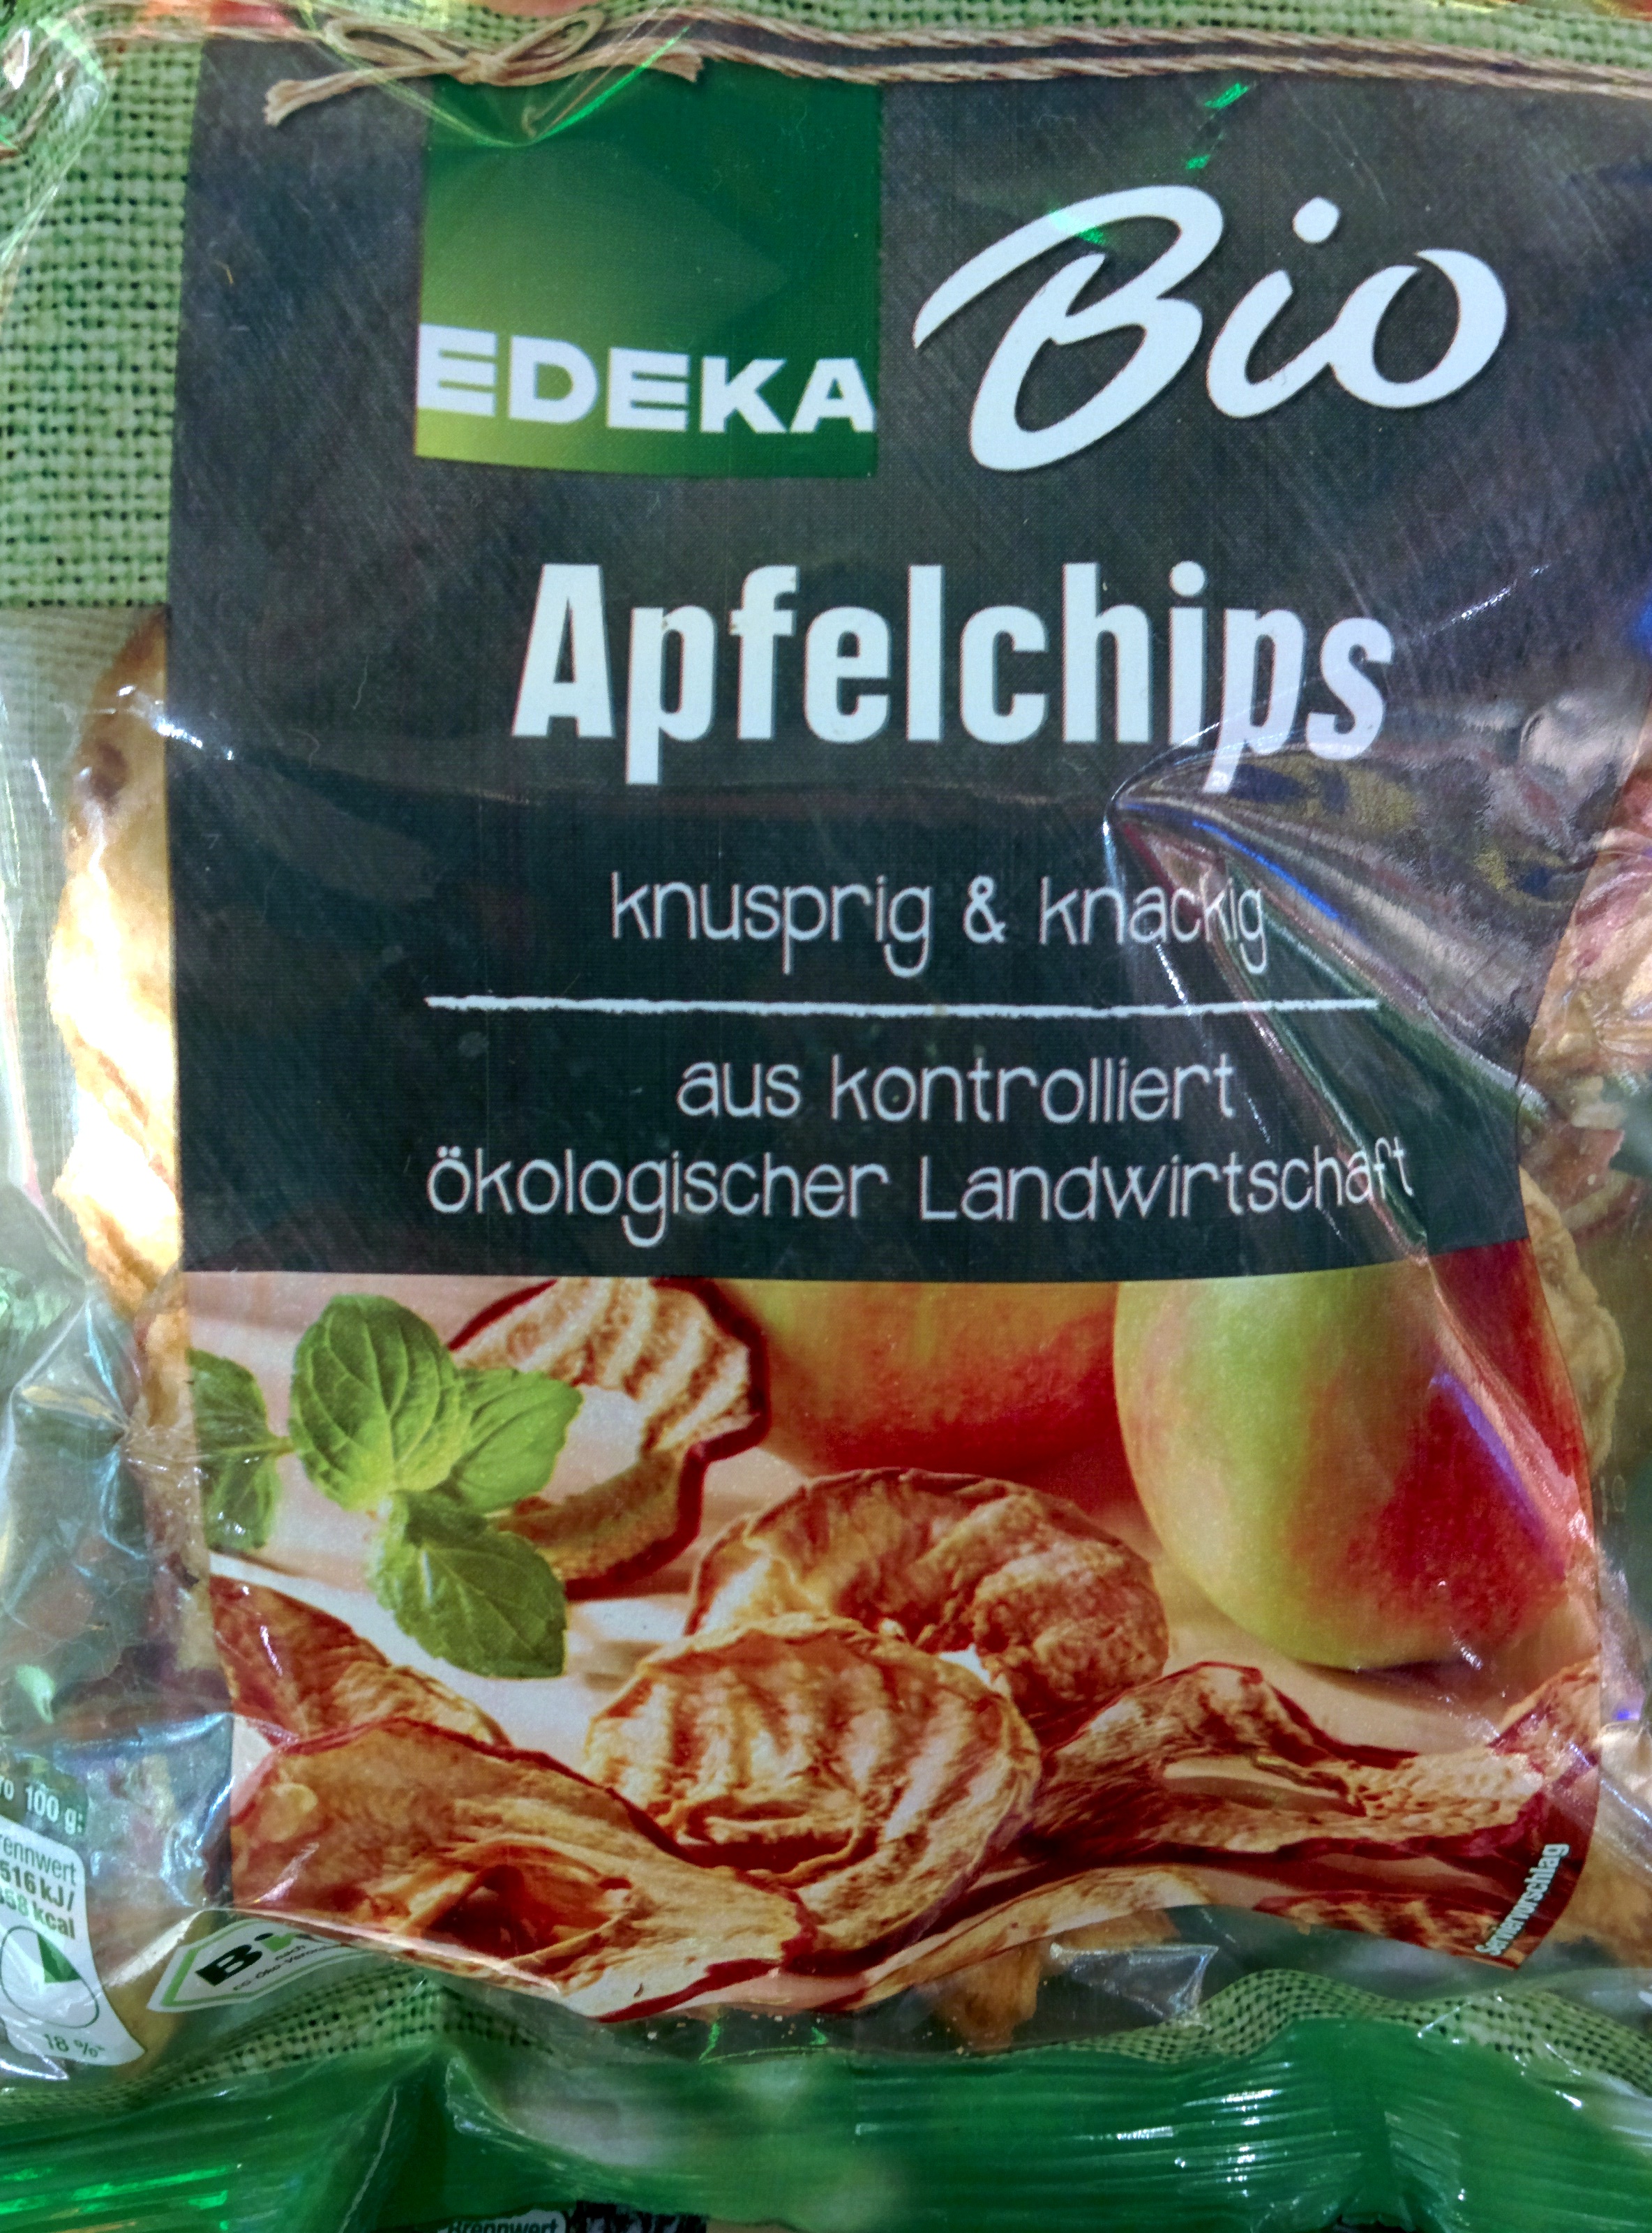 Apfelchips - Product - de